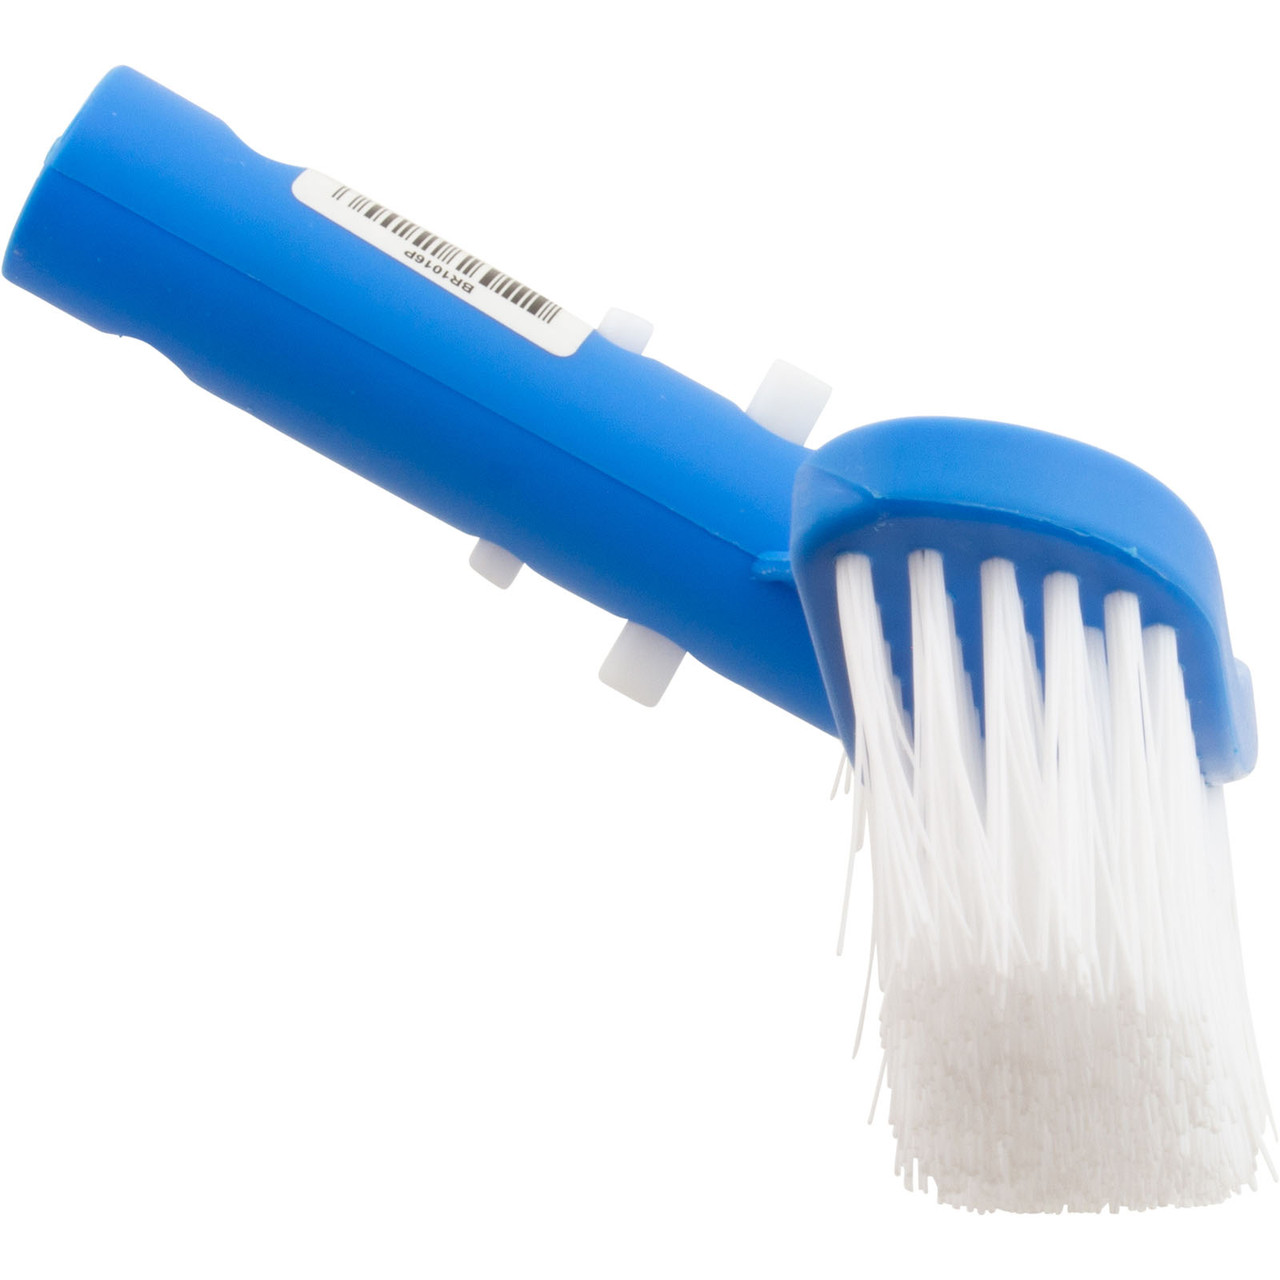 Pentair R111556 - Multi-Purpose Scrub Brush